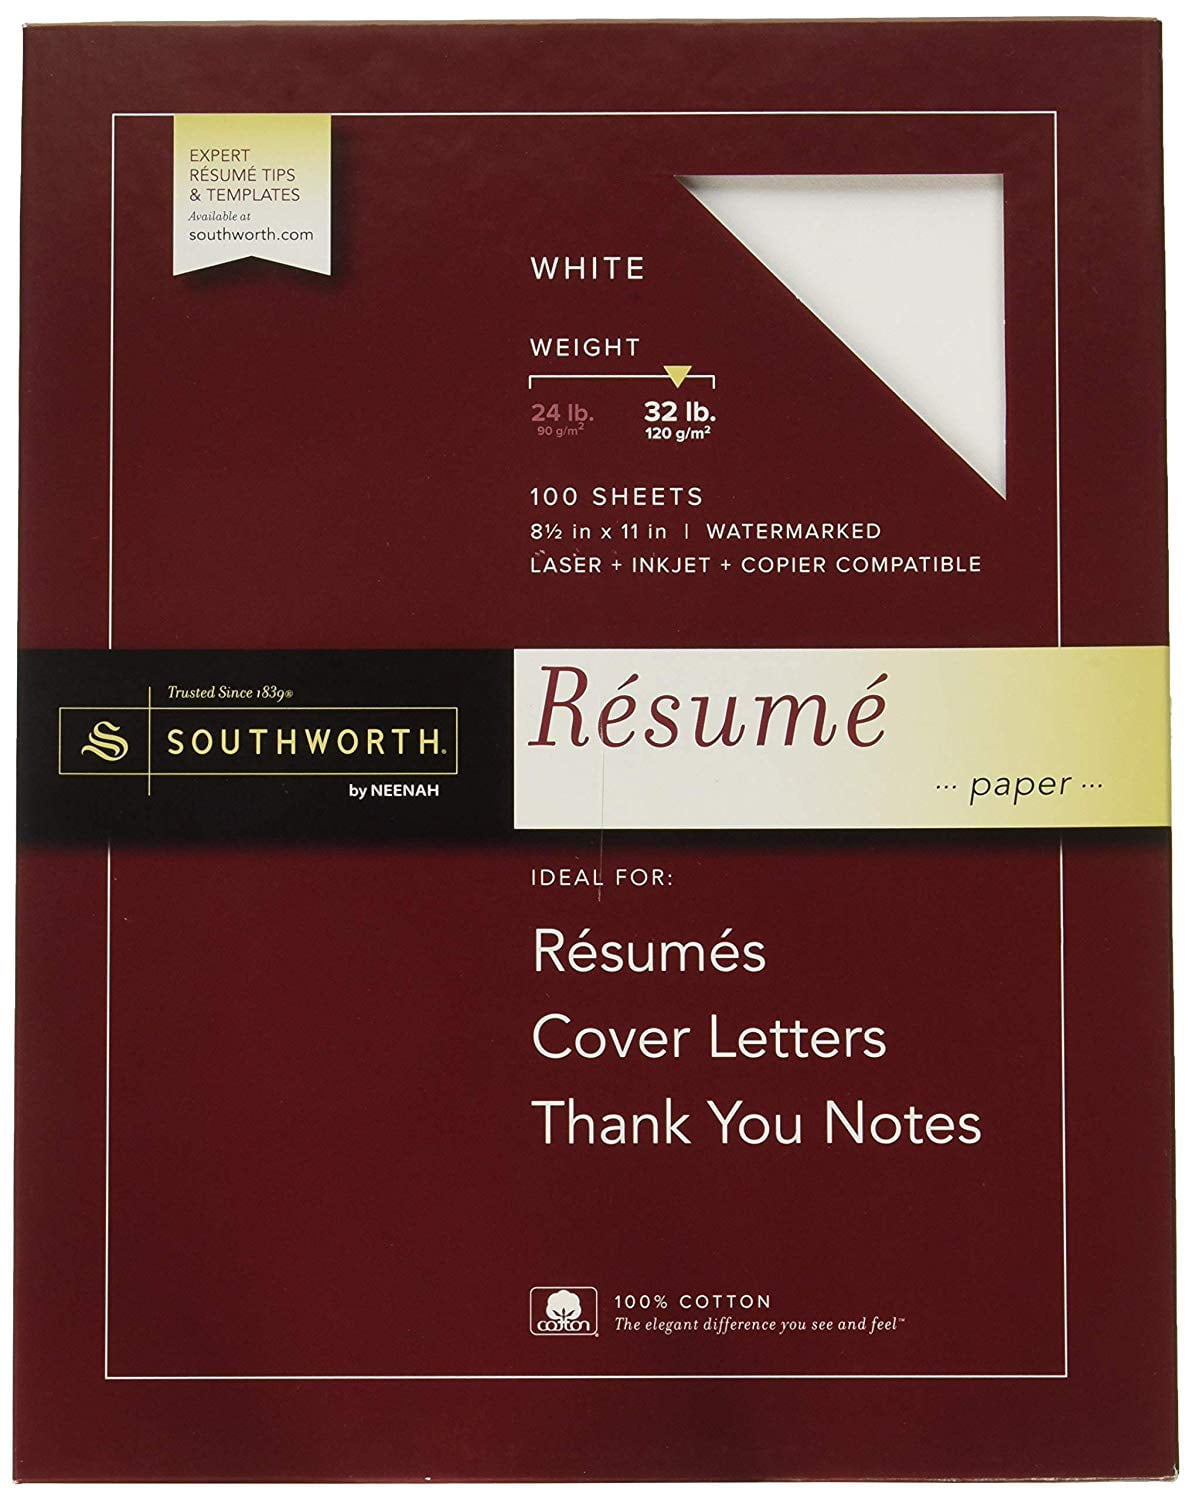 20% Cotton Résumé Paper, 20.20” x 20", 20 lb, Wove Finish, White Within Southworth Business Card Template